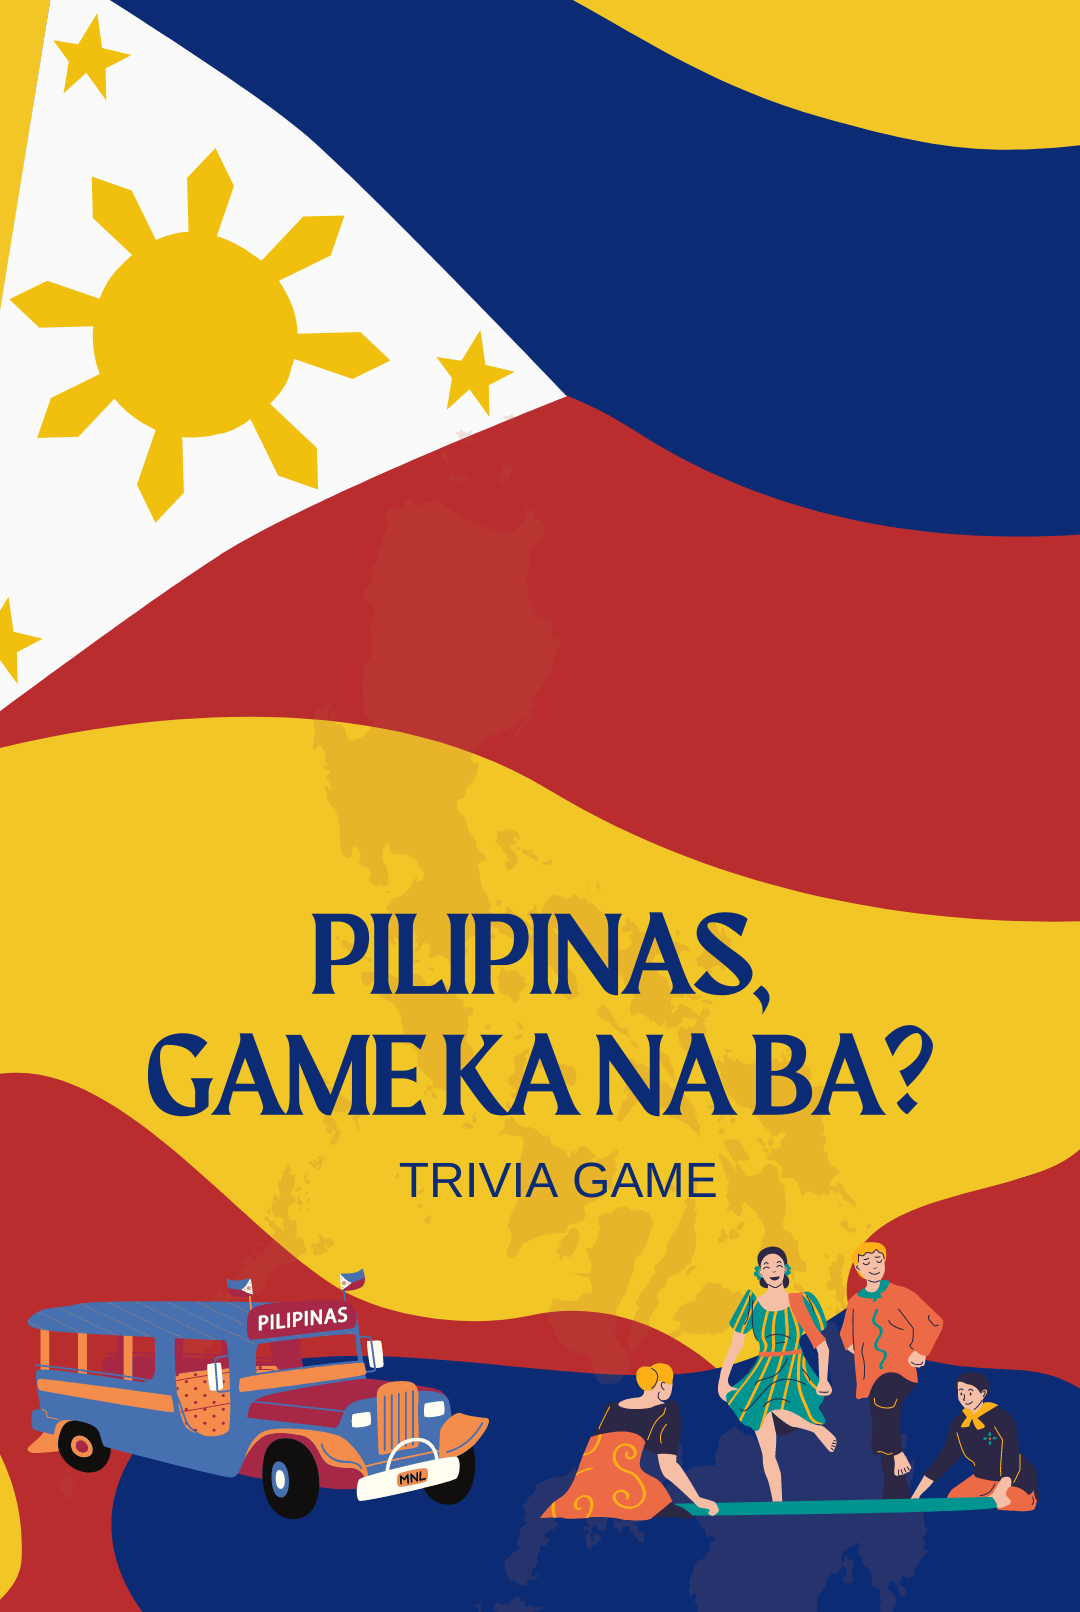 Pilipinas, Game Ka Na Ba?